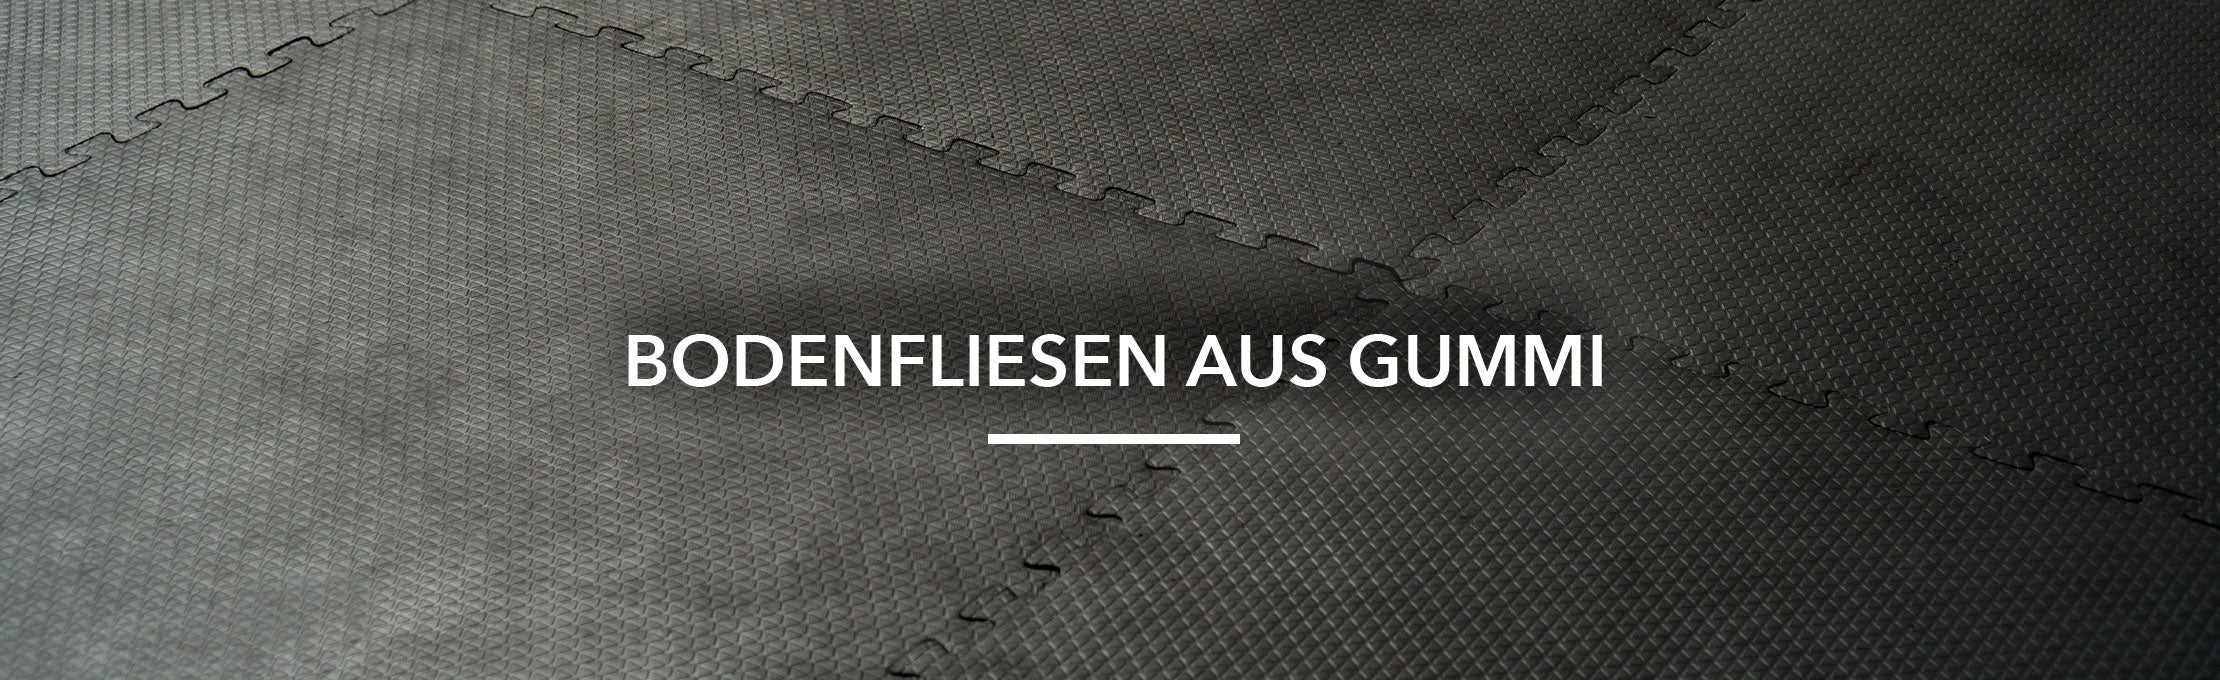 Bodenfliesen aus Gummi - für Innen und Außenbereich — Floordirekt DE